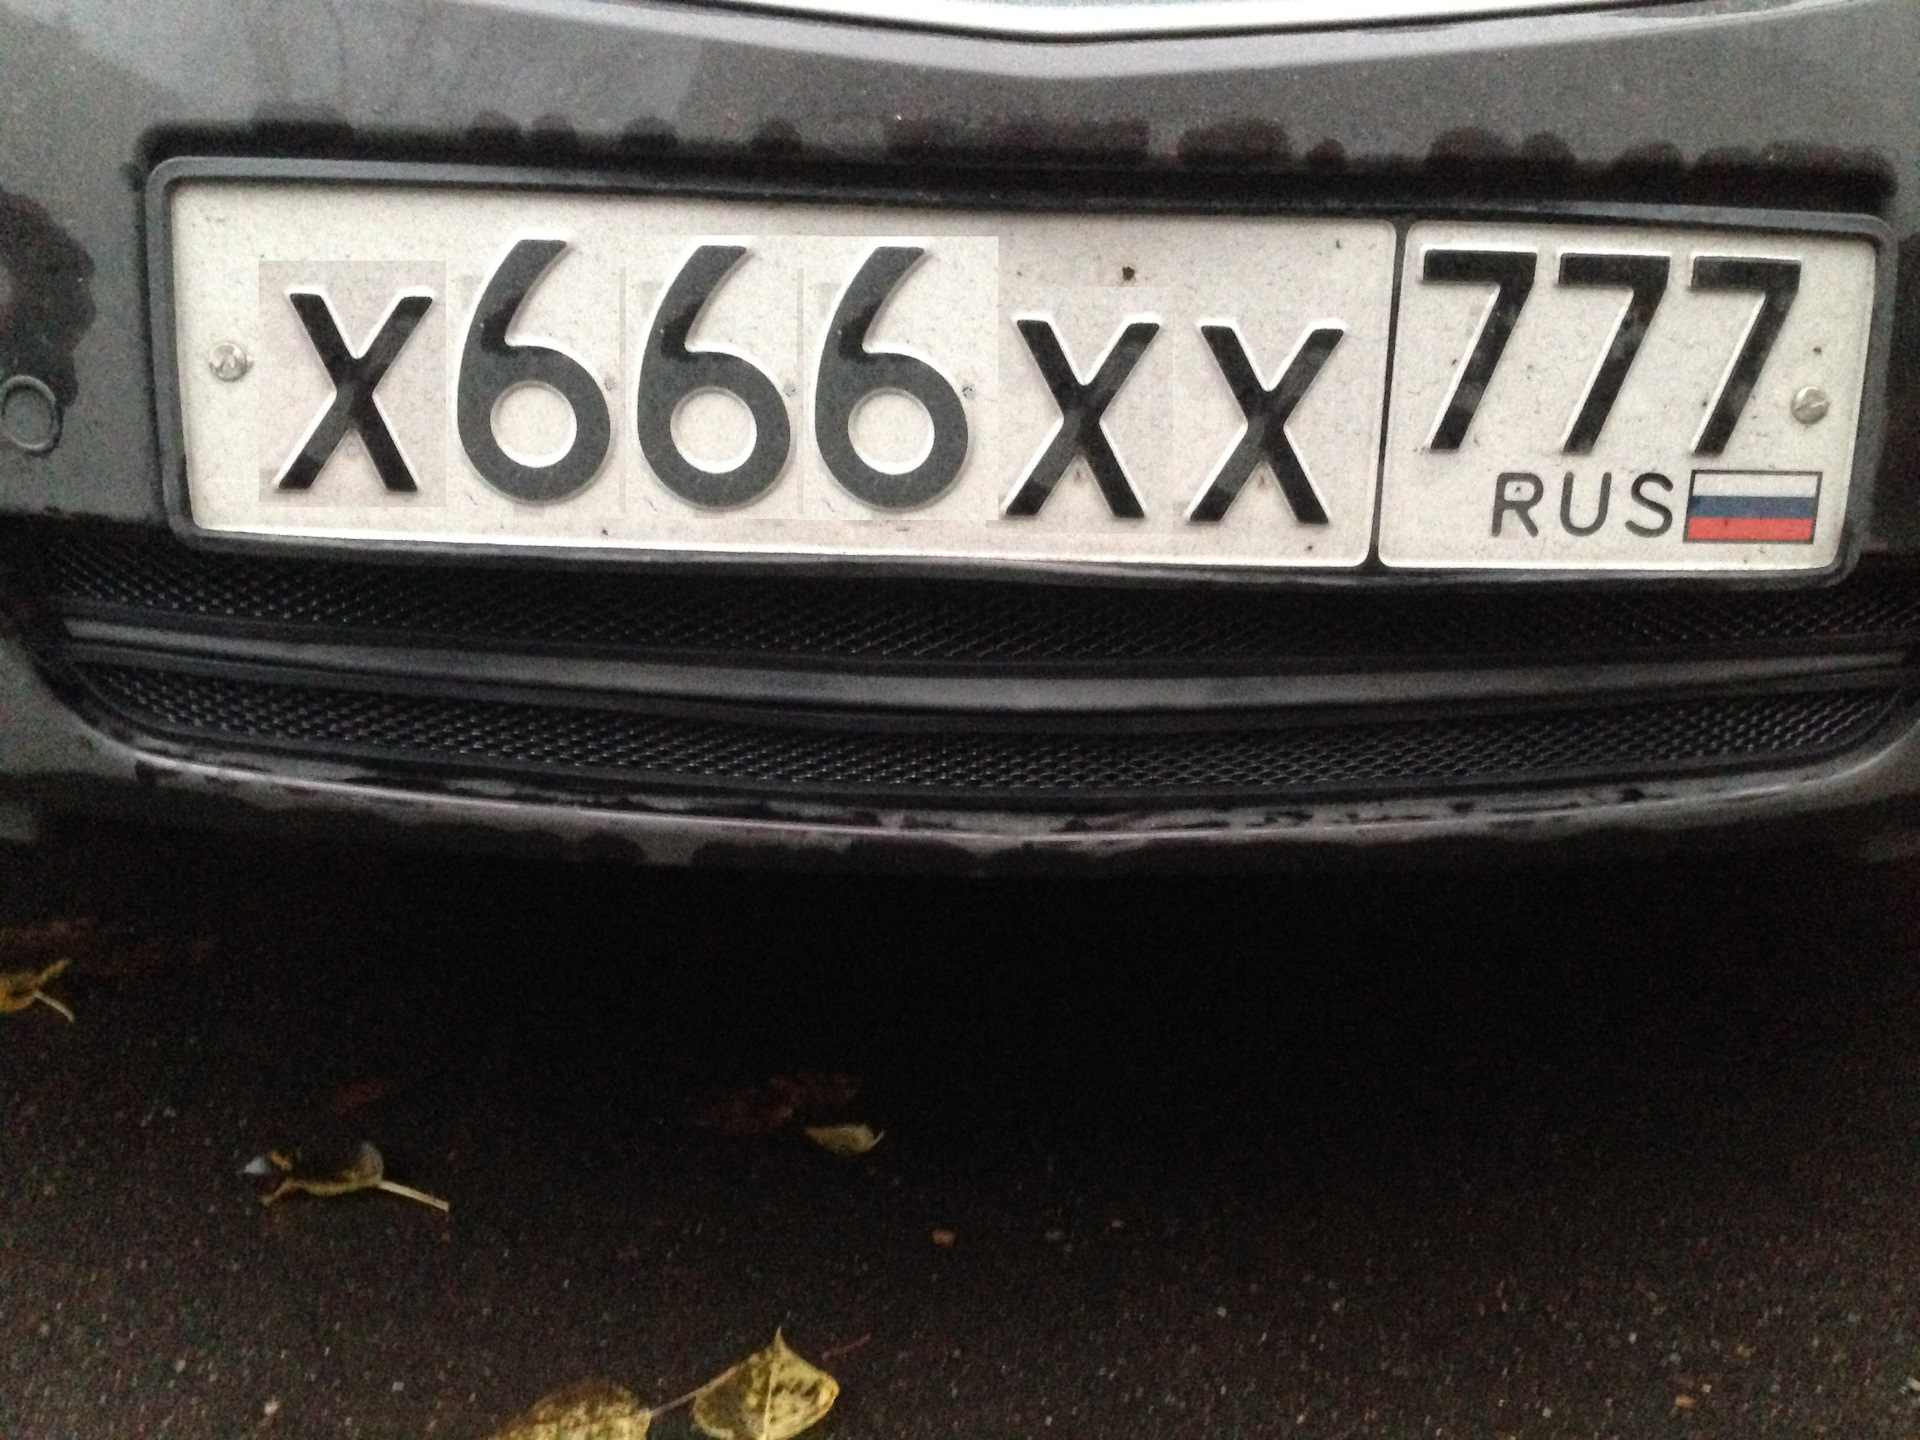 Сколько стоят номера 666 на машину. Гос номер 666 66. 666 Регион автомобильный номерной знак. Номер х666хх 777. 666 777 Гос номер.